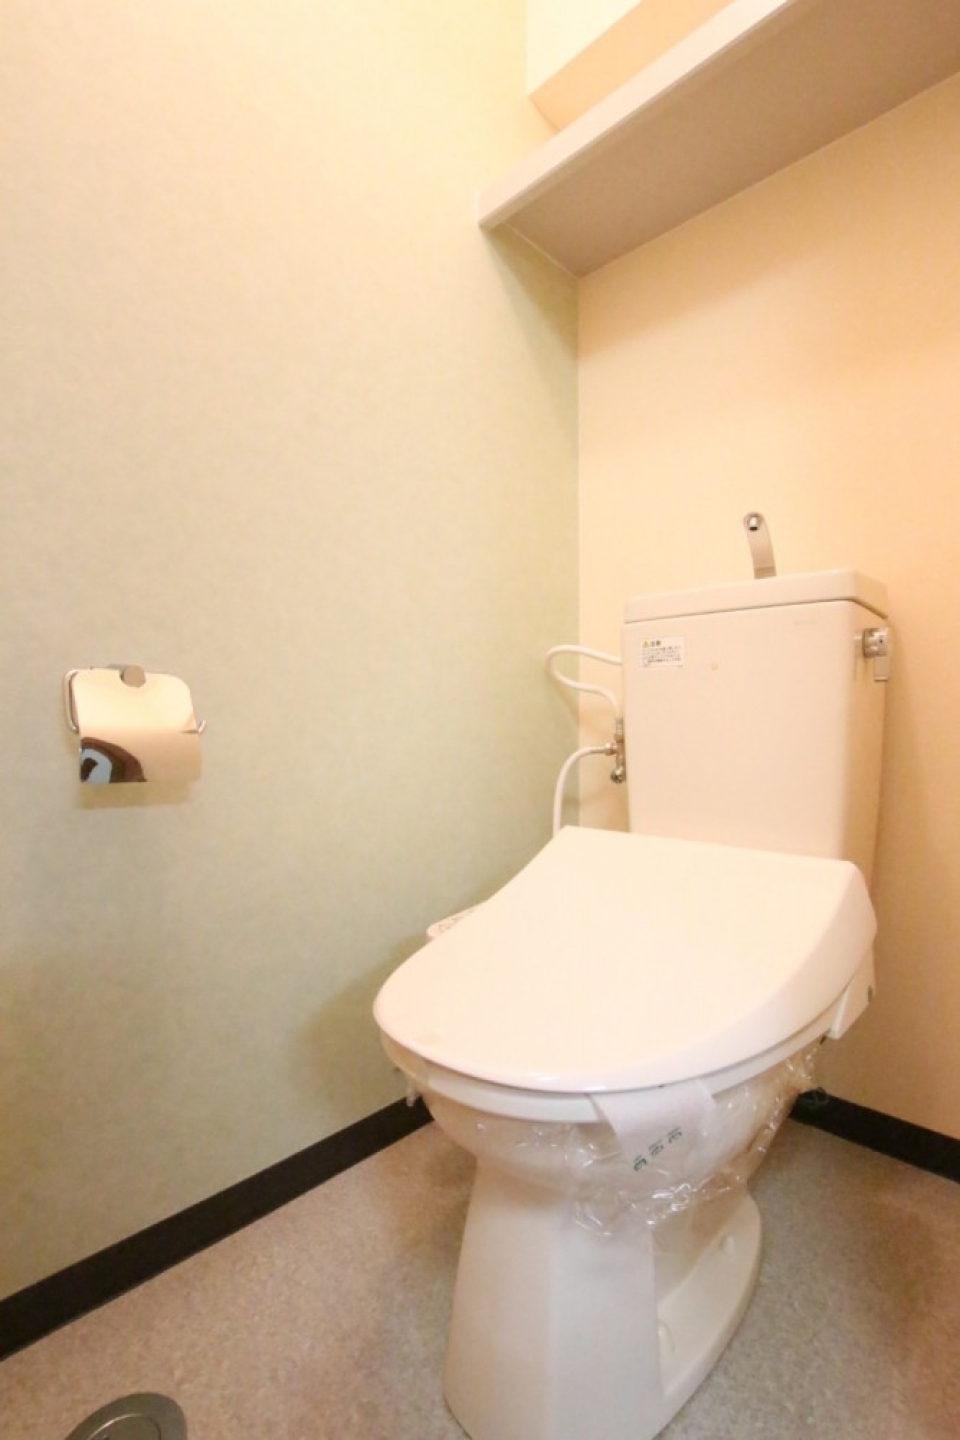 ライトグリーンの壁紙を使用したトイレ、シャワートイレ付き。